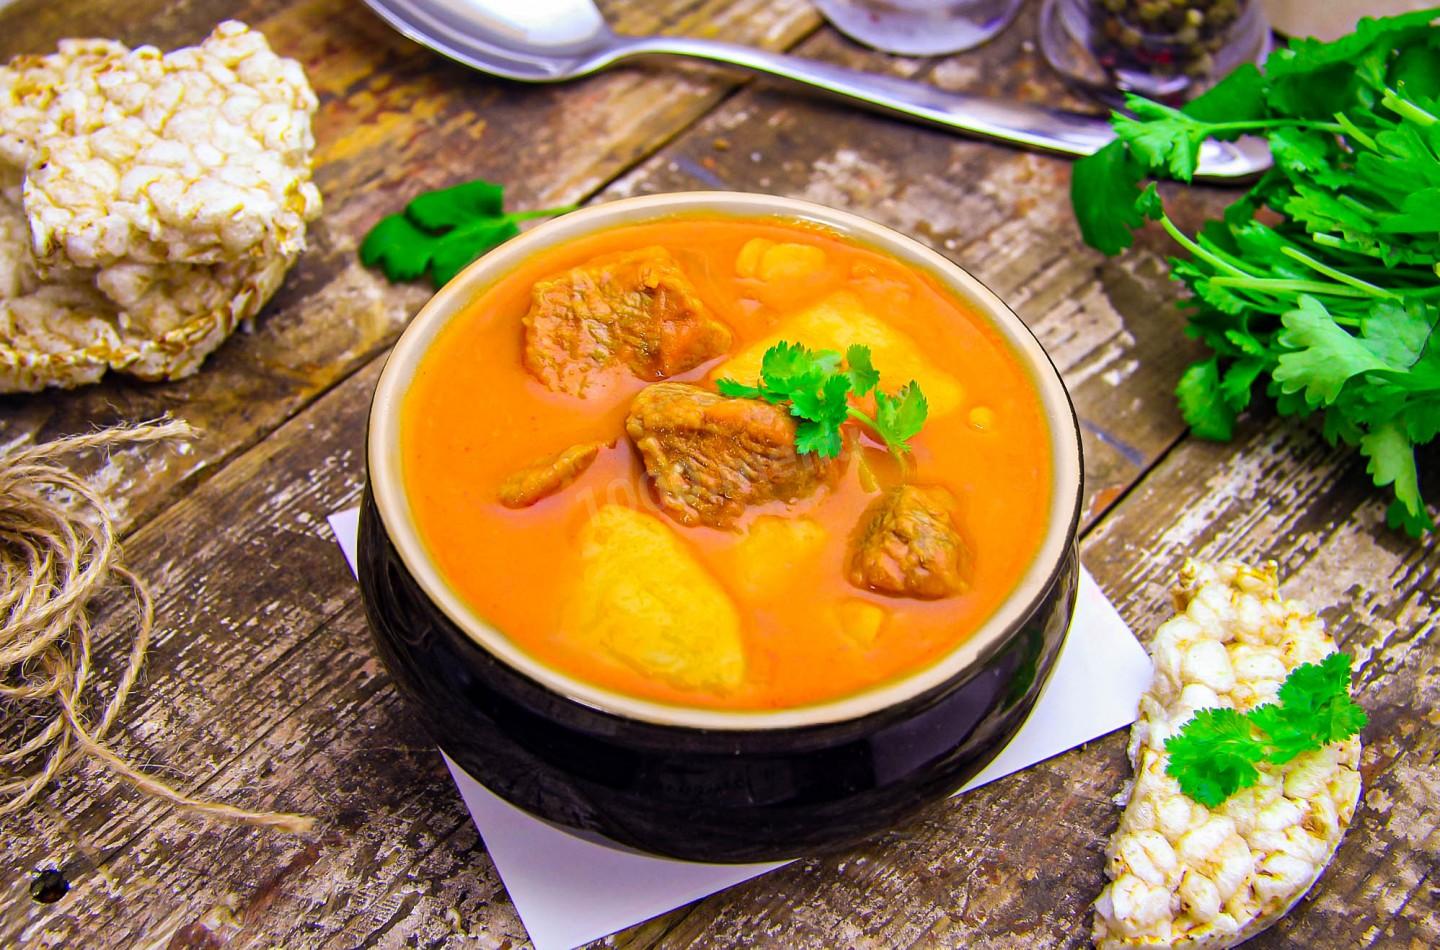 Картофельный суп с мясом